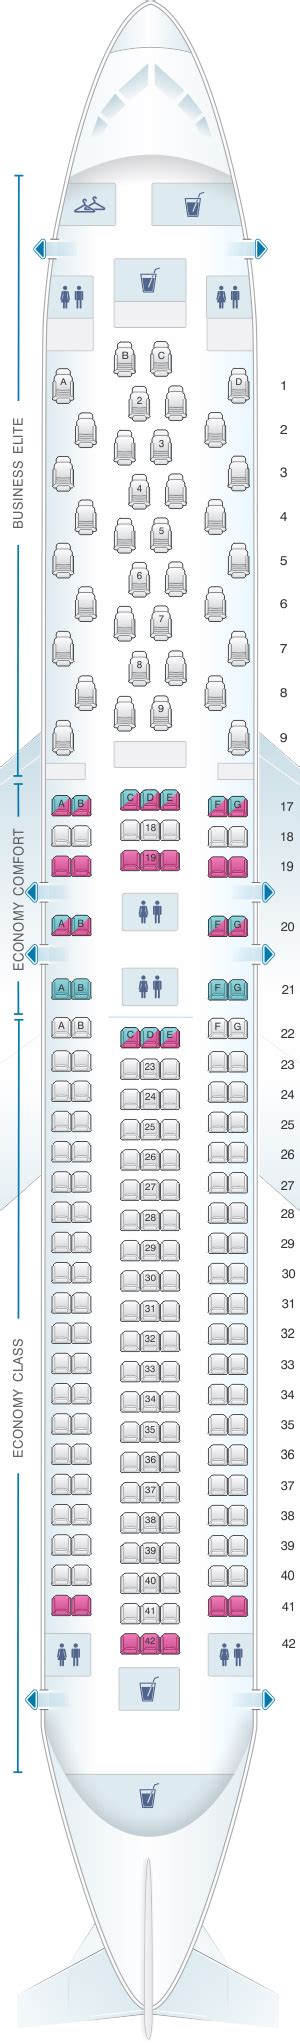 Boeing 767 300er Seat Map